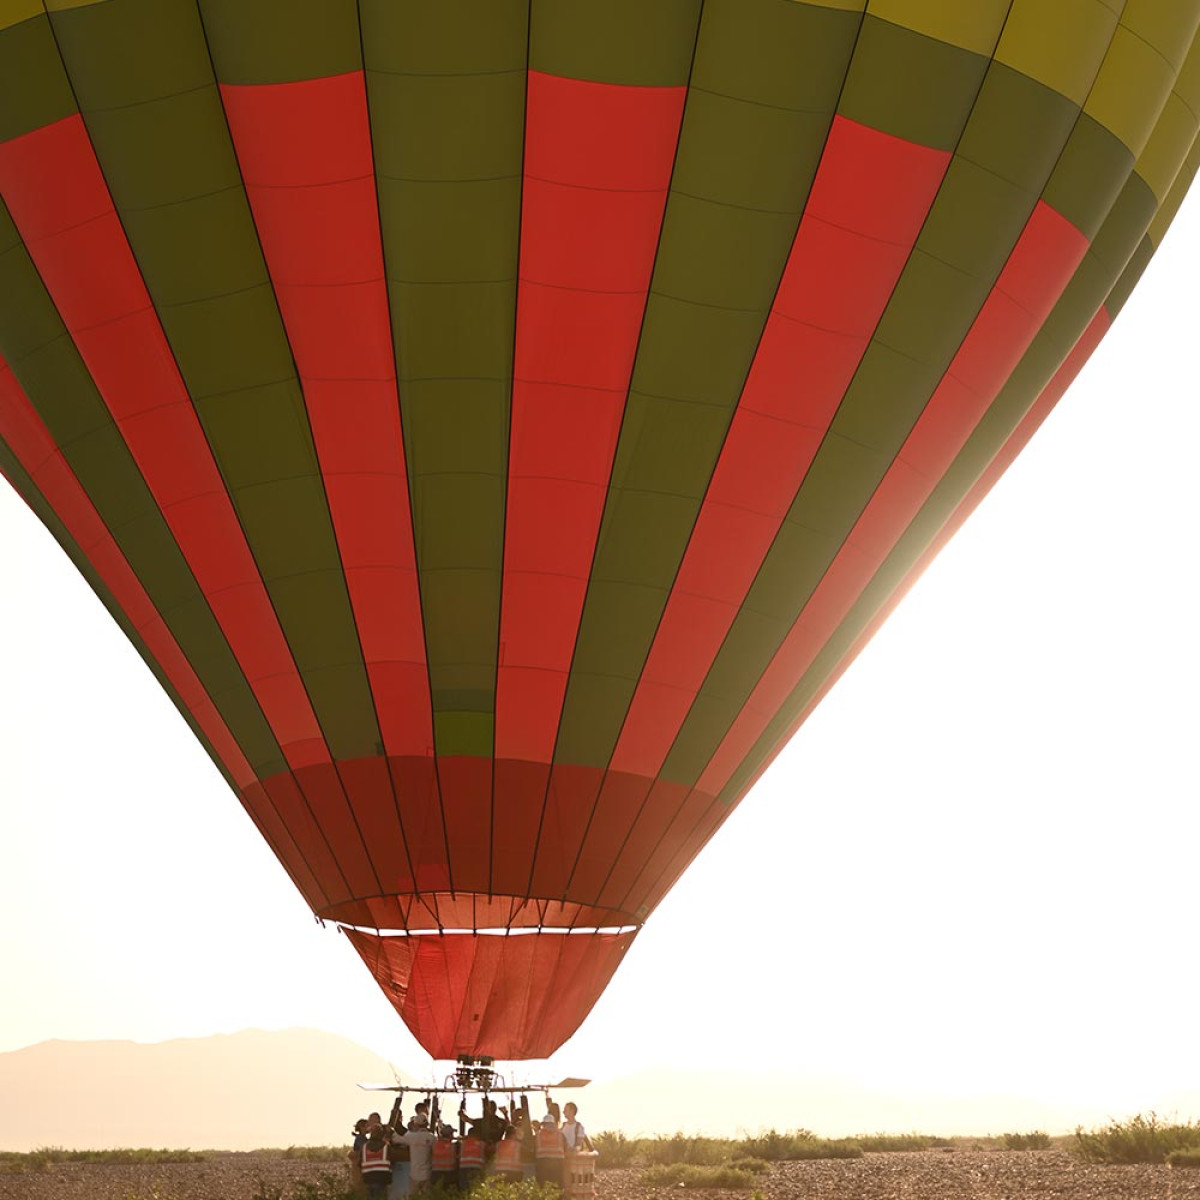 Vliegen met een luchtballon Marrakech zit vol avontuur